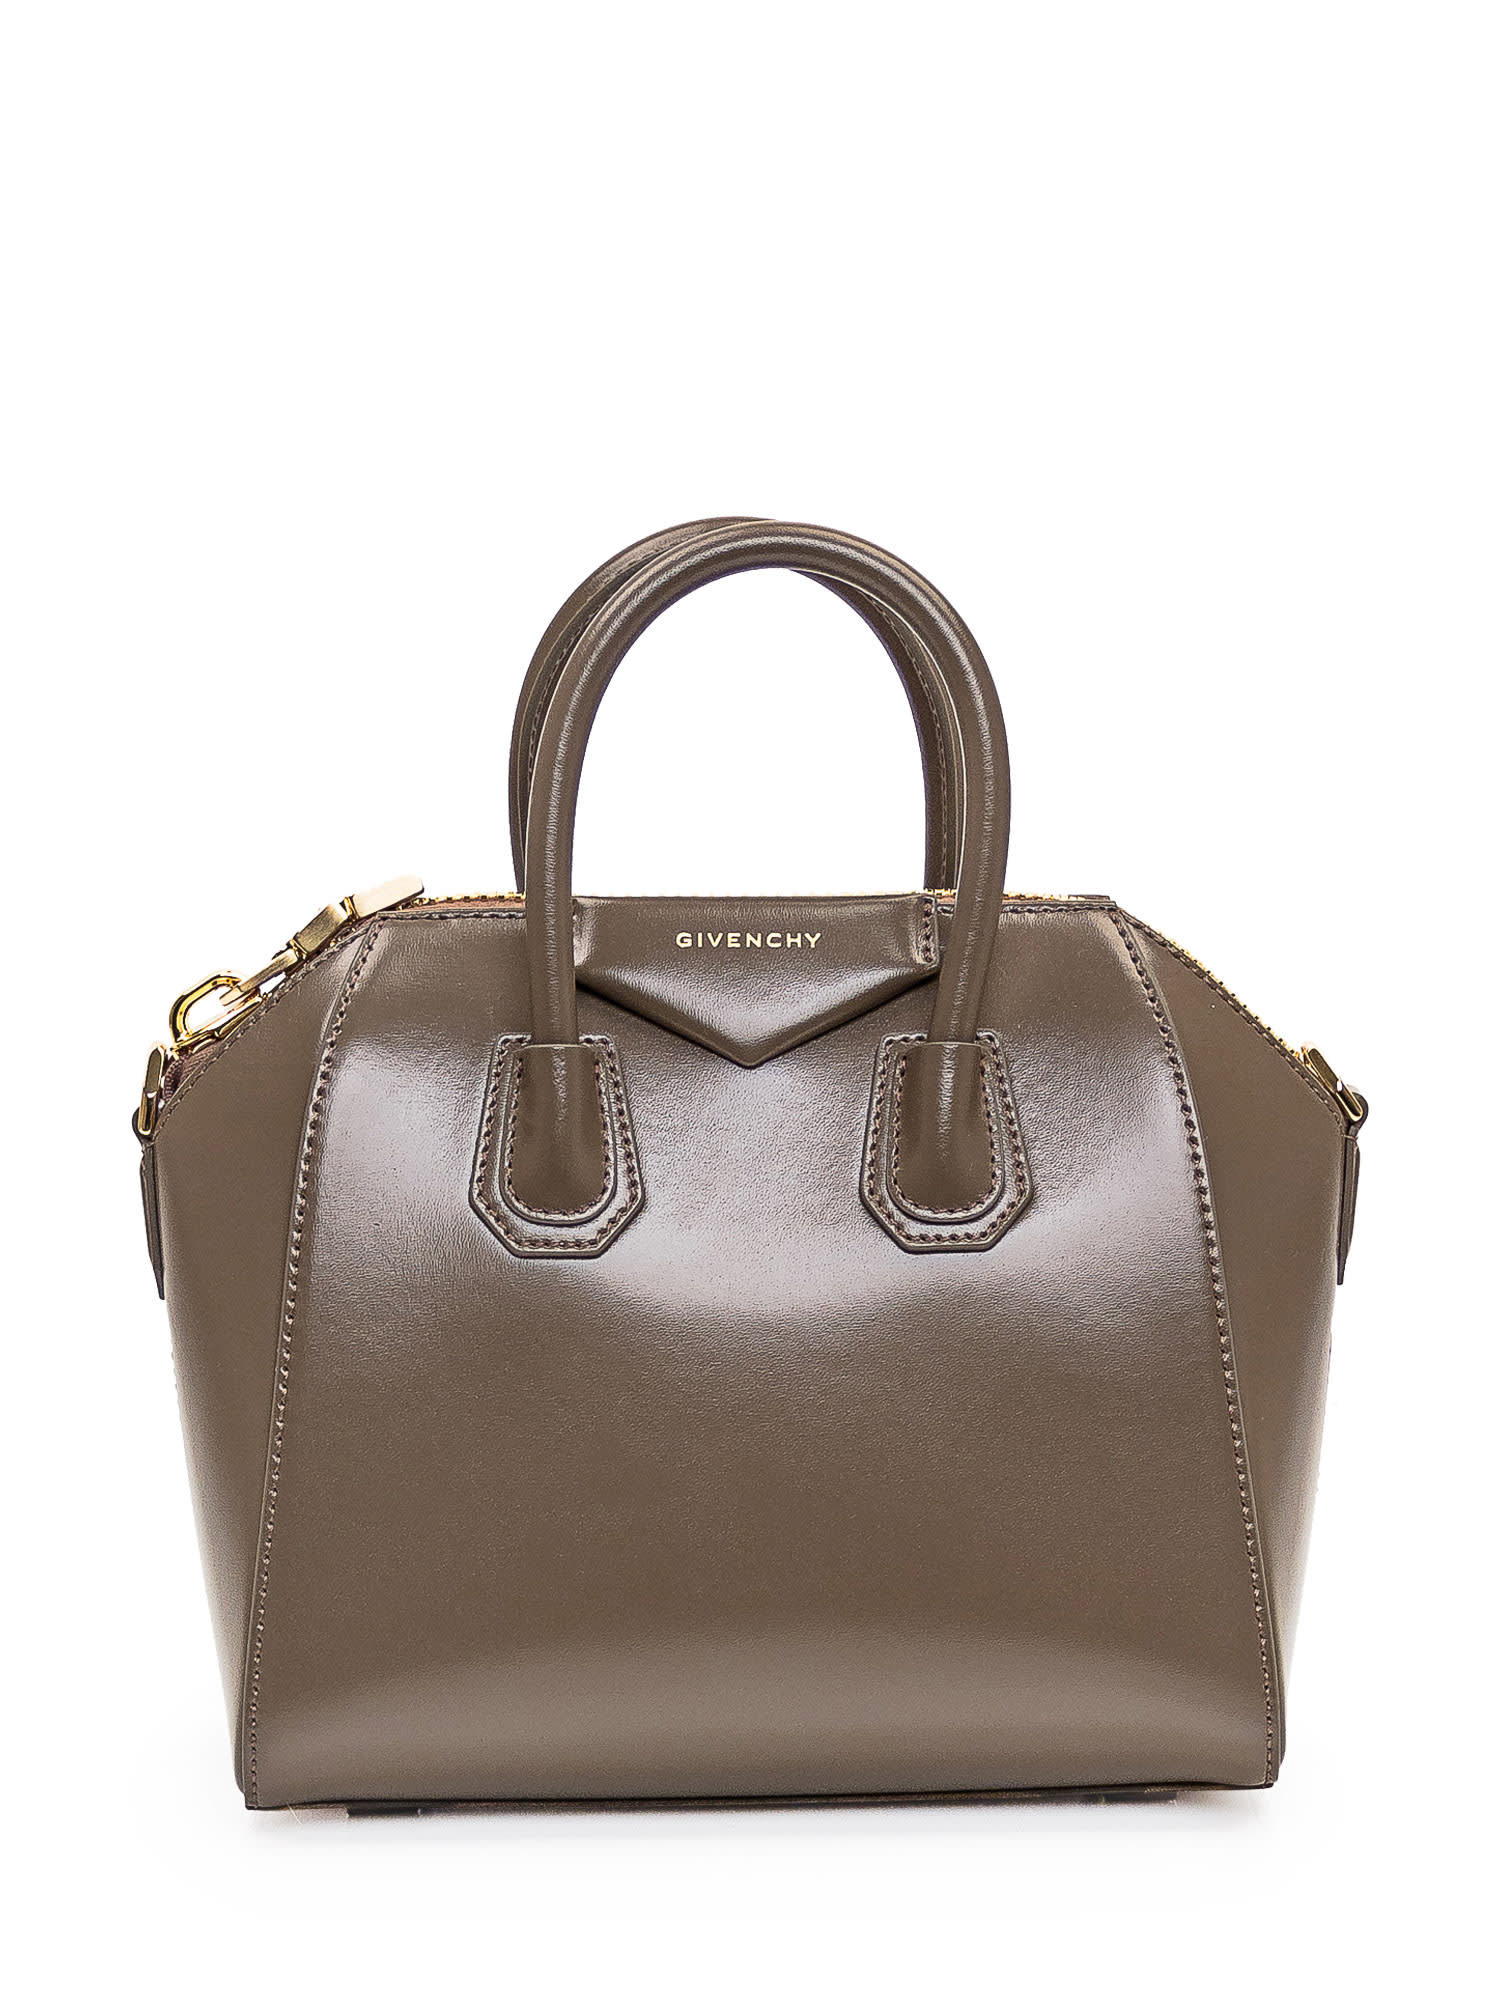 Givenchy Antigona Mini Bag In Dove